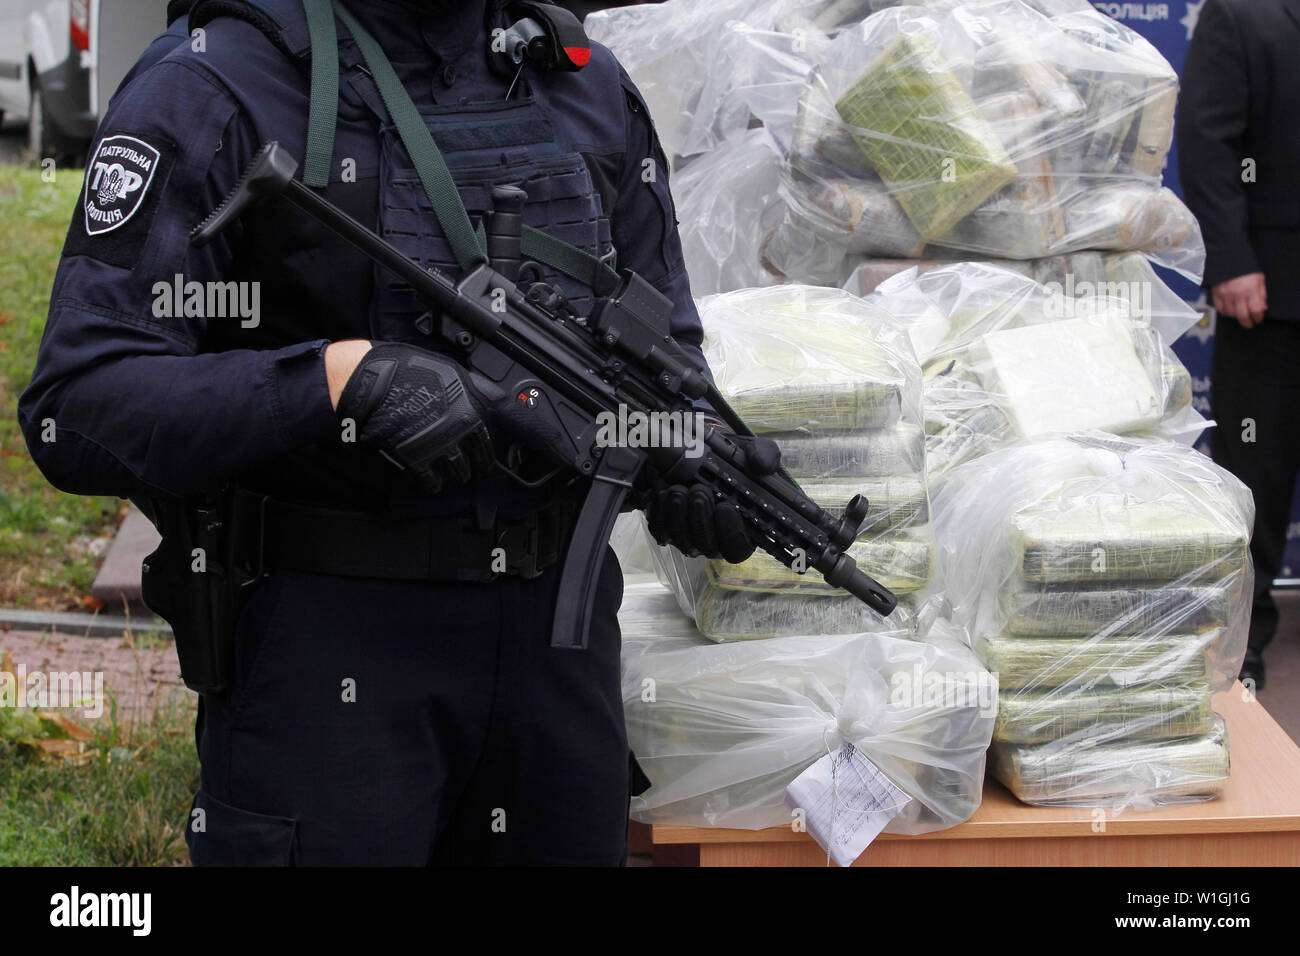 Soporte de agentes de policía de guardia junto a las bolsas de cocaína, que fueron incautados durante una operación policial especial en una conferencia de prensa de la Policía Nacional y el Departamento de Policía Antinarcóticos y el Departamento de la Drug Enforcement Administration (DEA) en el Ministerio de Asuntos Internos en Kiev.La policía de Ucrania, en cooperación con la DEA estadounidense reveló el canal transnacional de drogas de Colombia a la UE y detuvo a los traficantes de drogas y se incautó de 400 kg de cocaína coste estimado de 60 millones de dólares, que iban a ser transferidas desde América Latina a través de Ucrania a Foto de stock